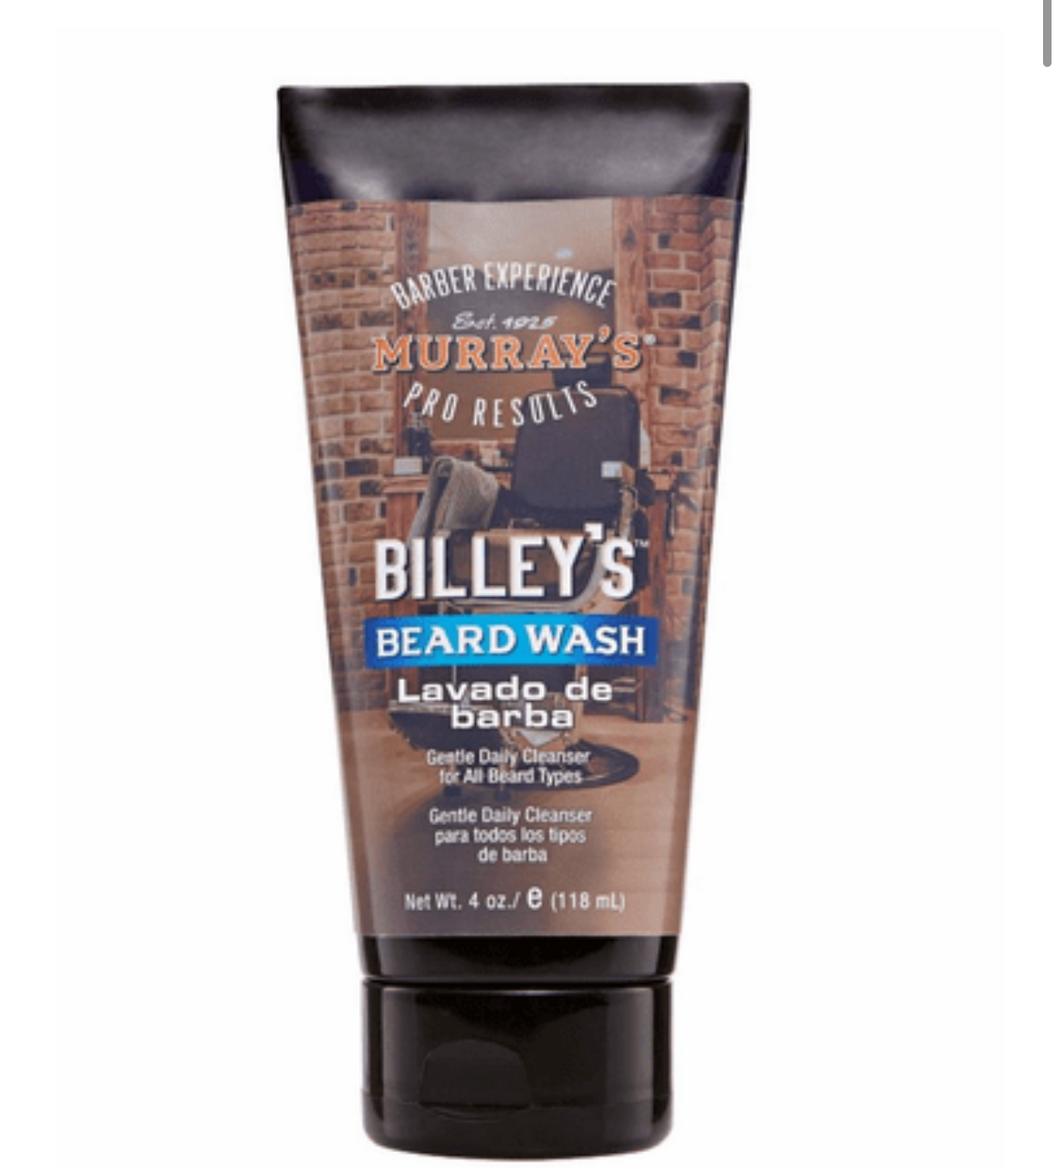 Murray’s Billey’s Beard Wash